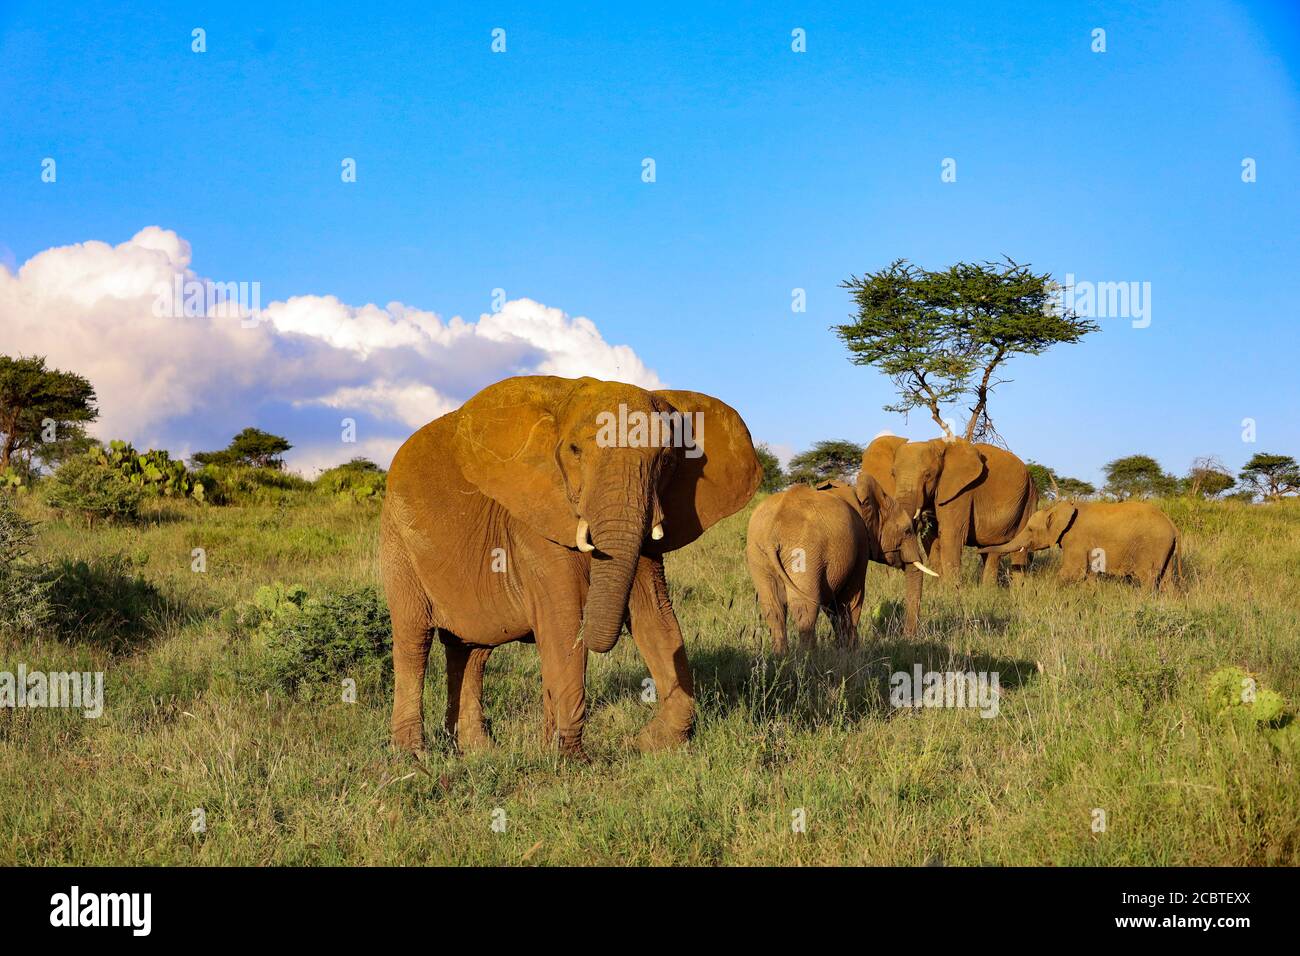 Herd of elephants grazing in Kenya, Africa Stock Photo